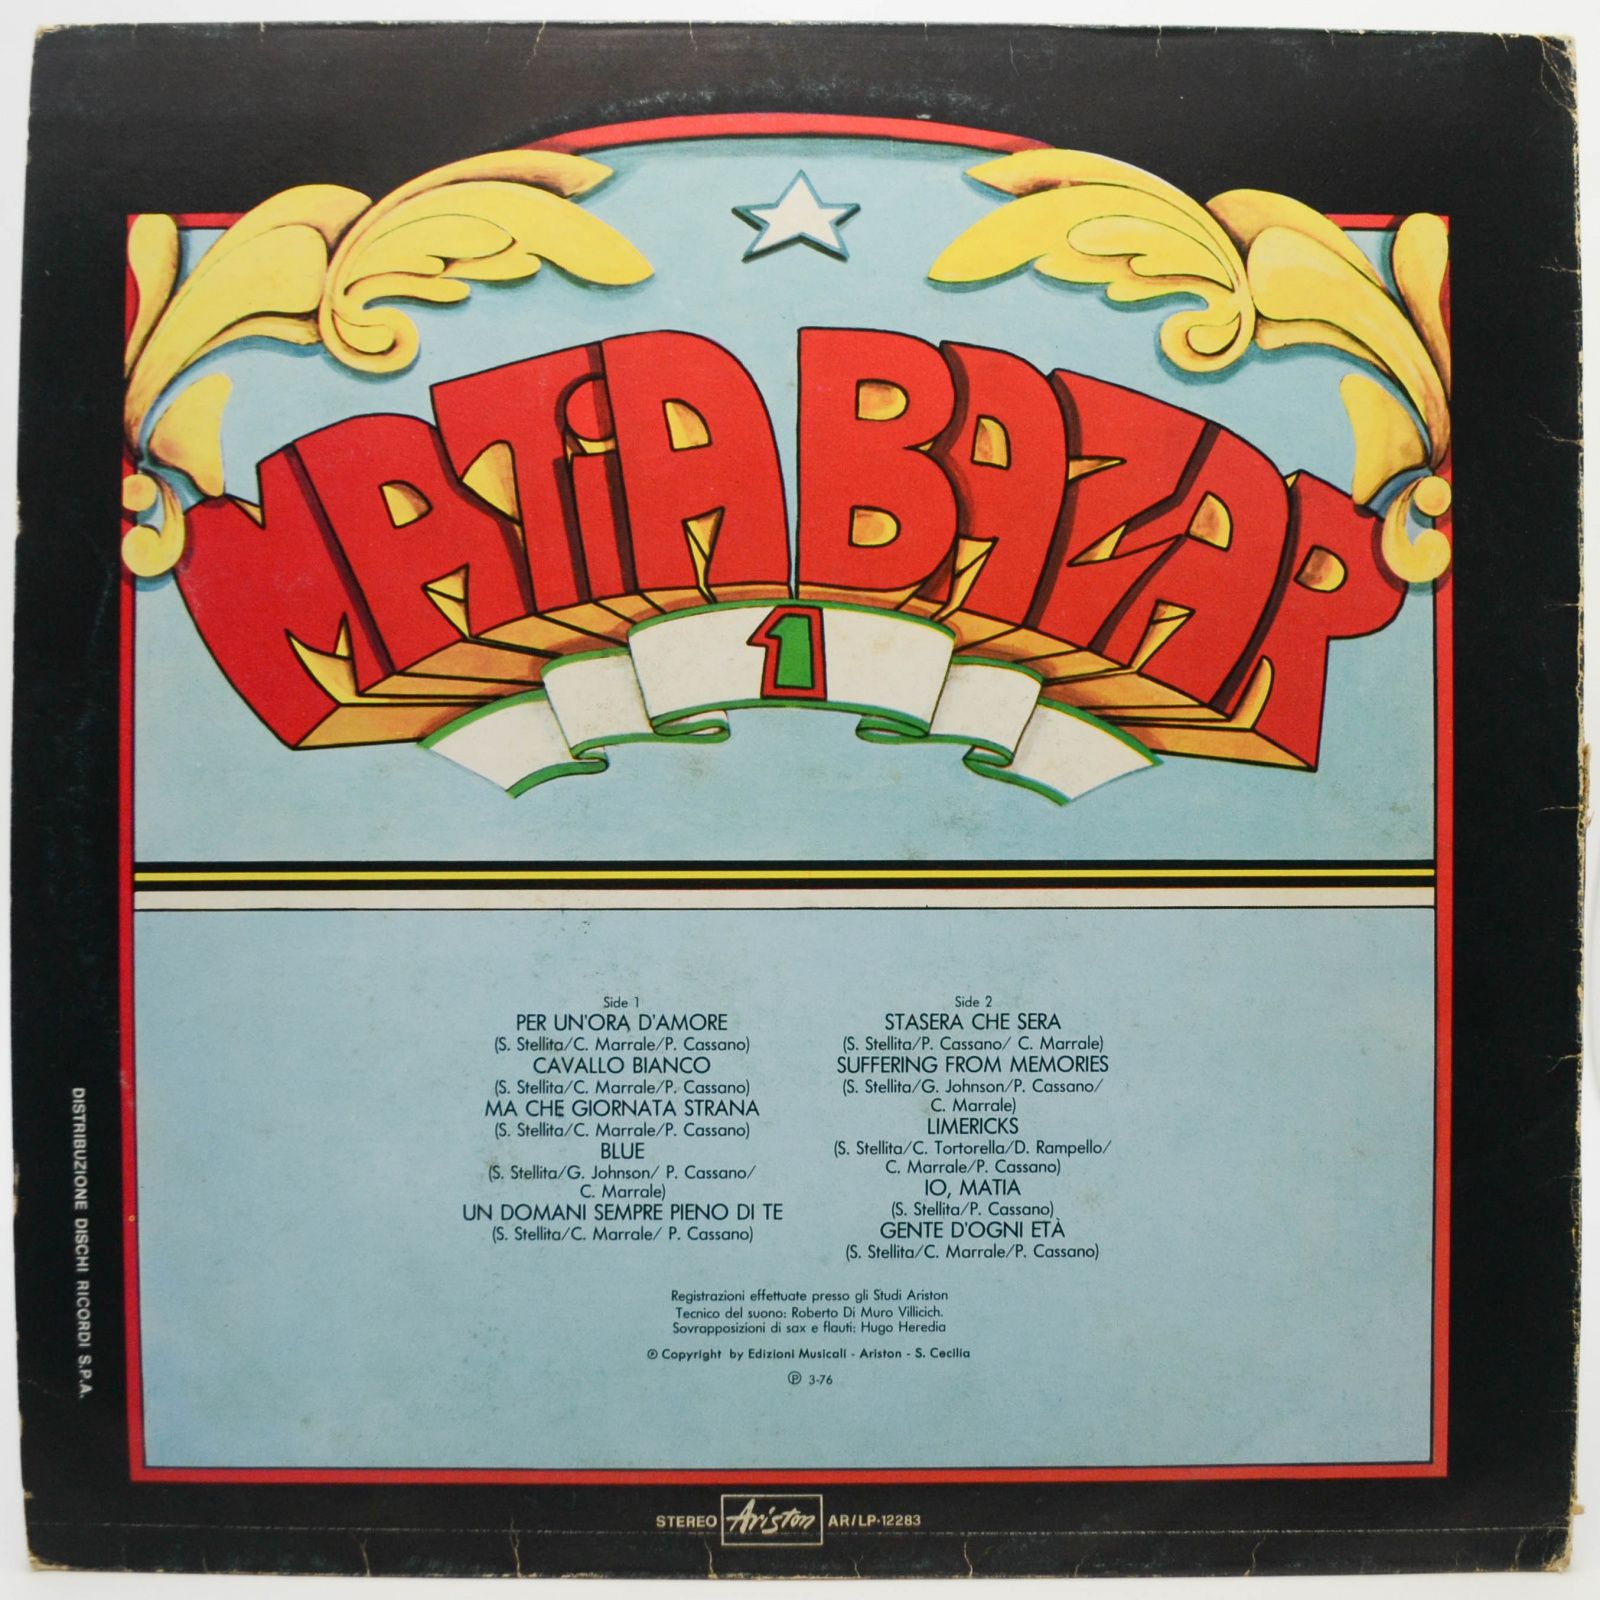 Matia Bazar — Matia Bazar 1 (1-st, Italy), 1976